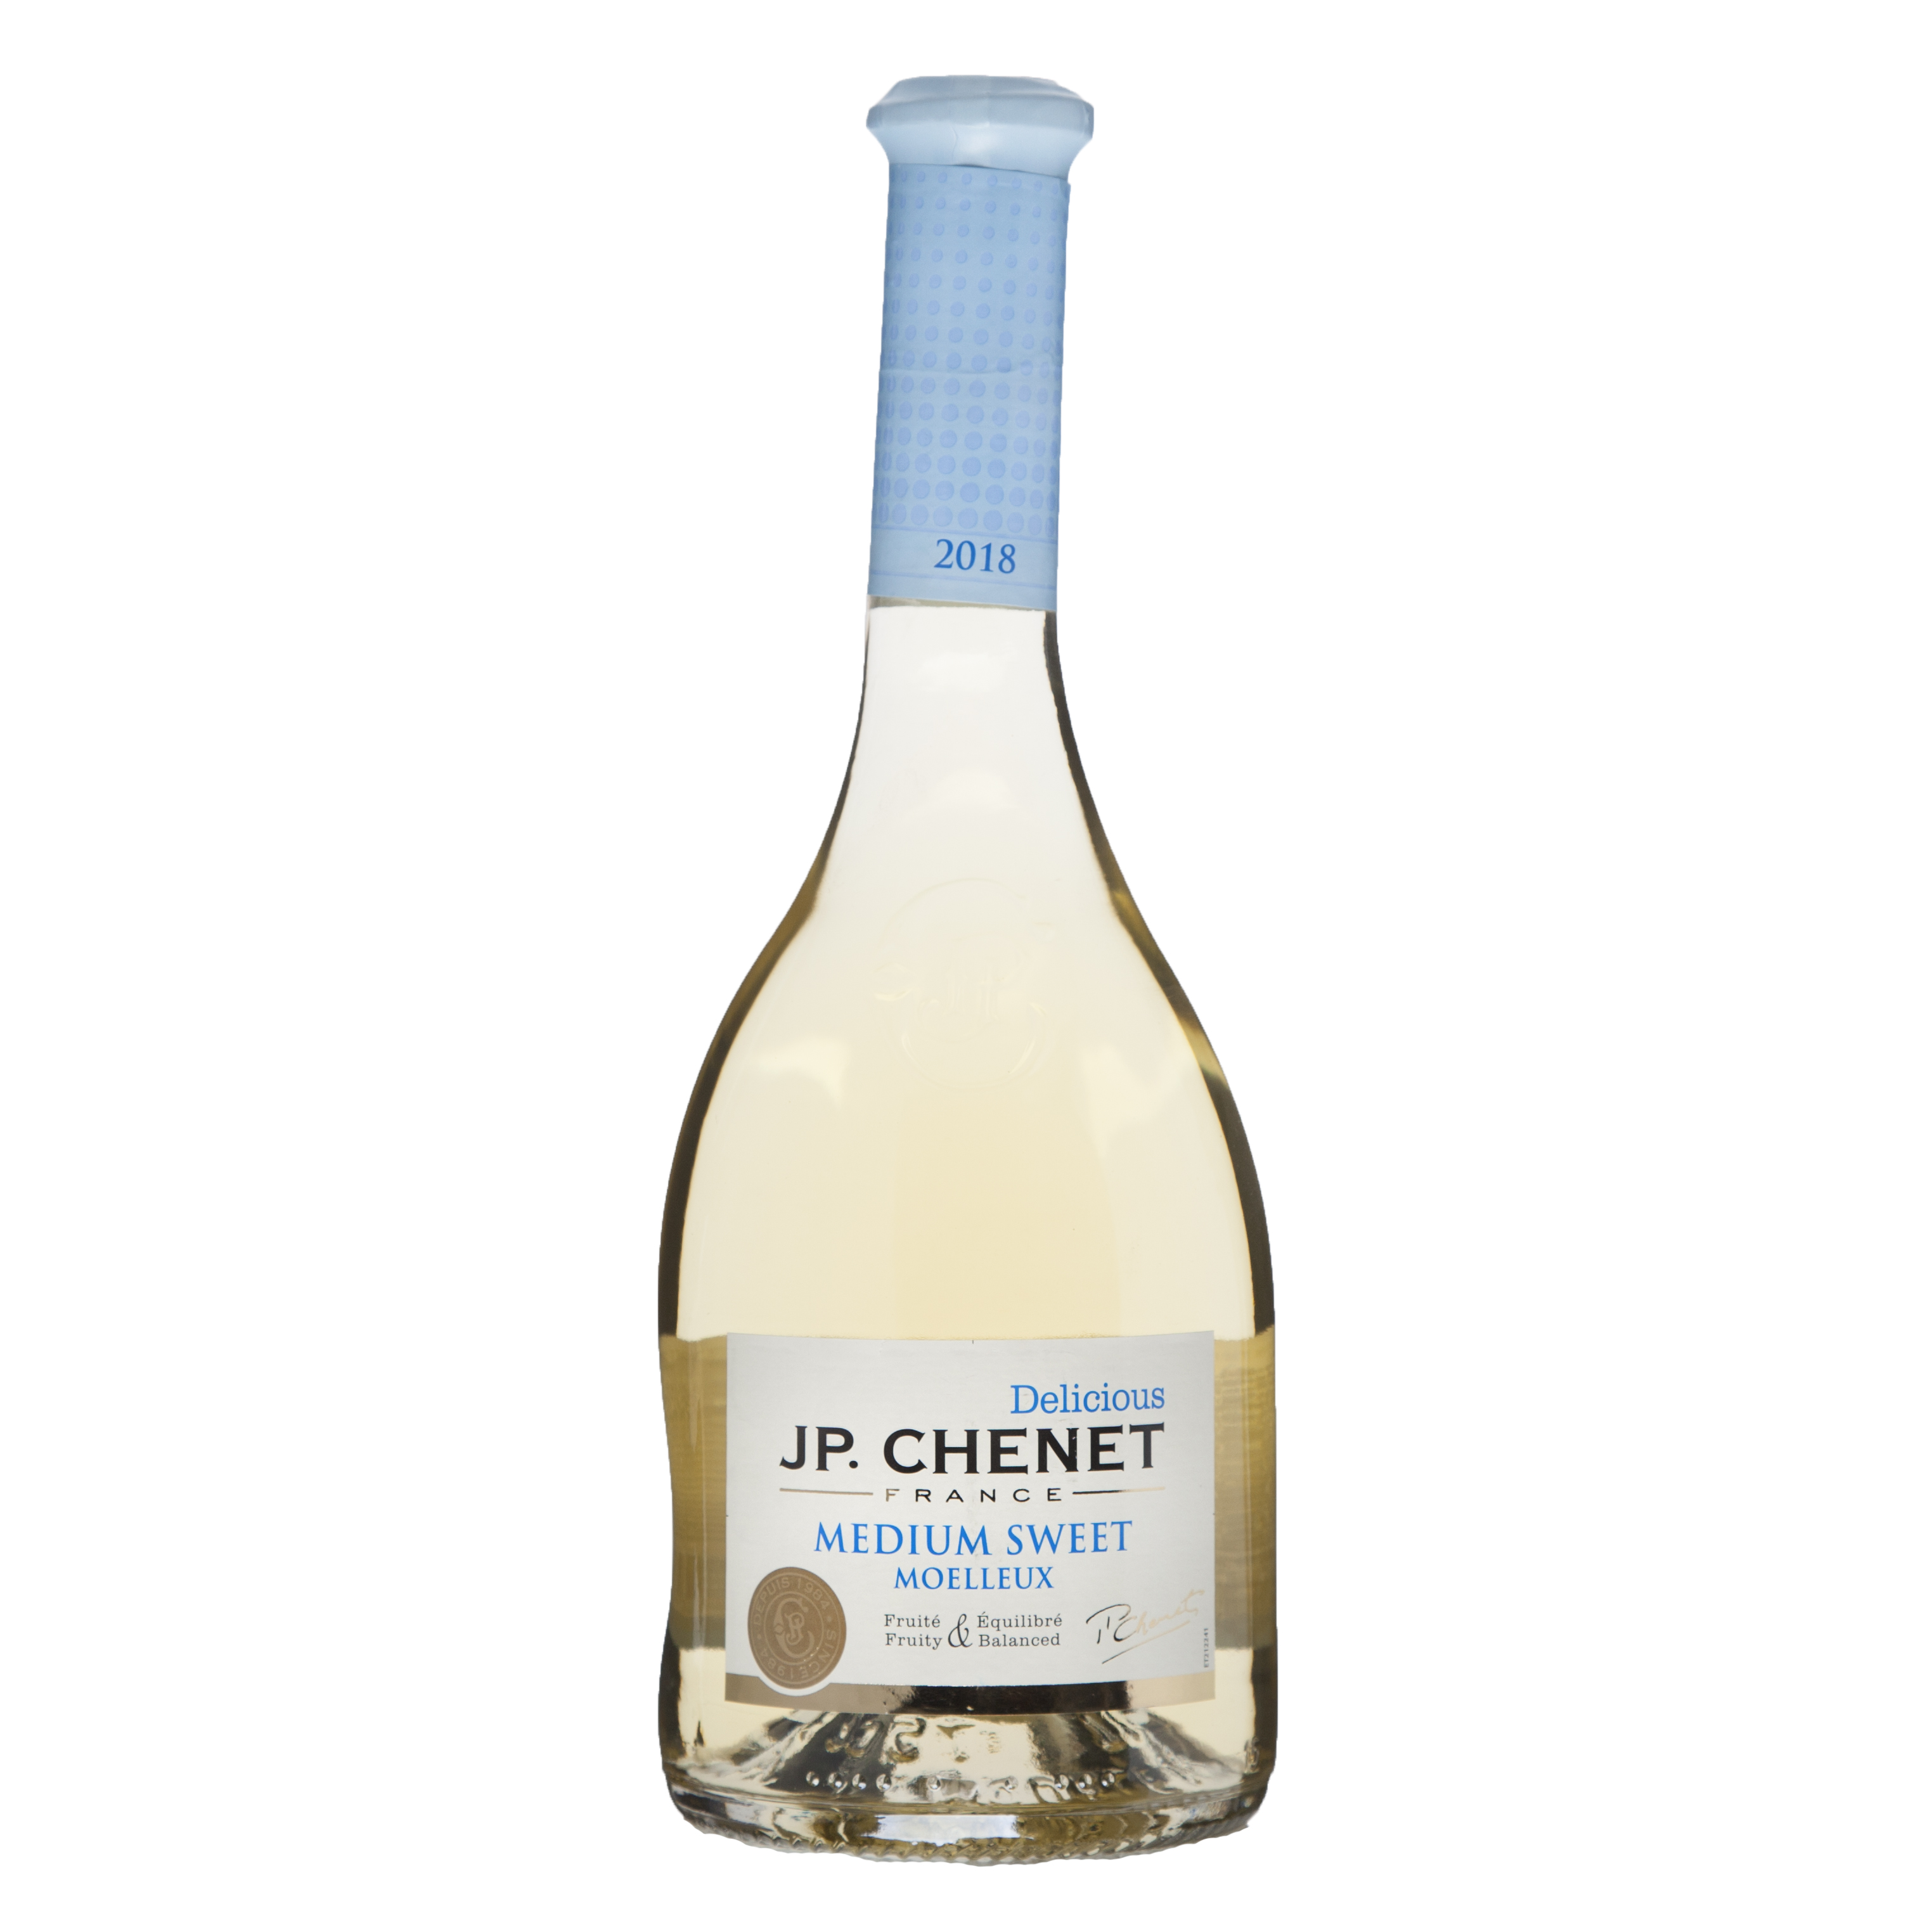 Medium sweet вино. Вино jp CHENET Medium Sweet белое. J P CHENET белое полусладкое.